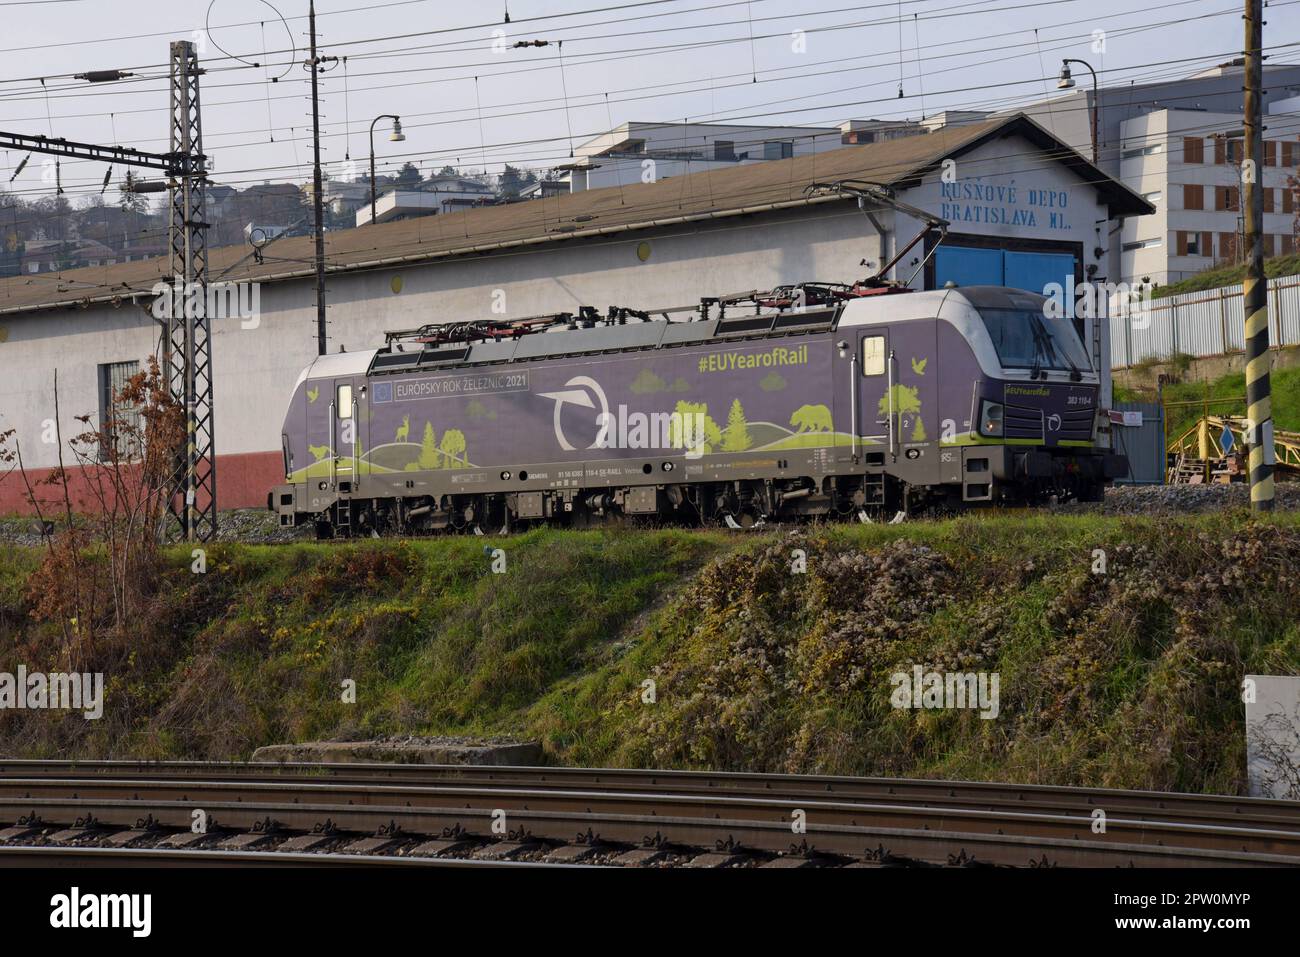 Slovak Railways European Year Of Rail Vectron locomotive at the main depot in Bratislava, Slovakia Stock Photo